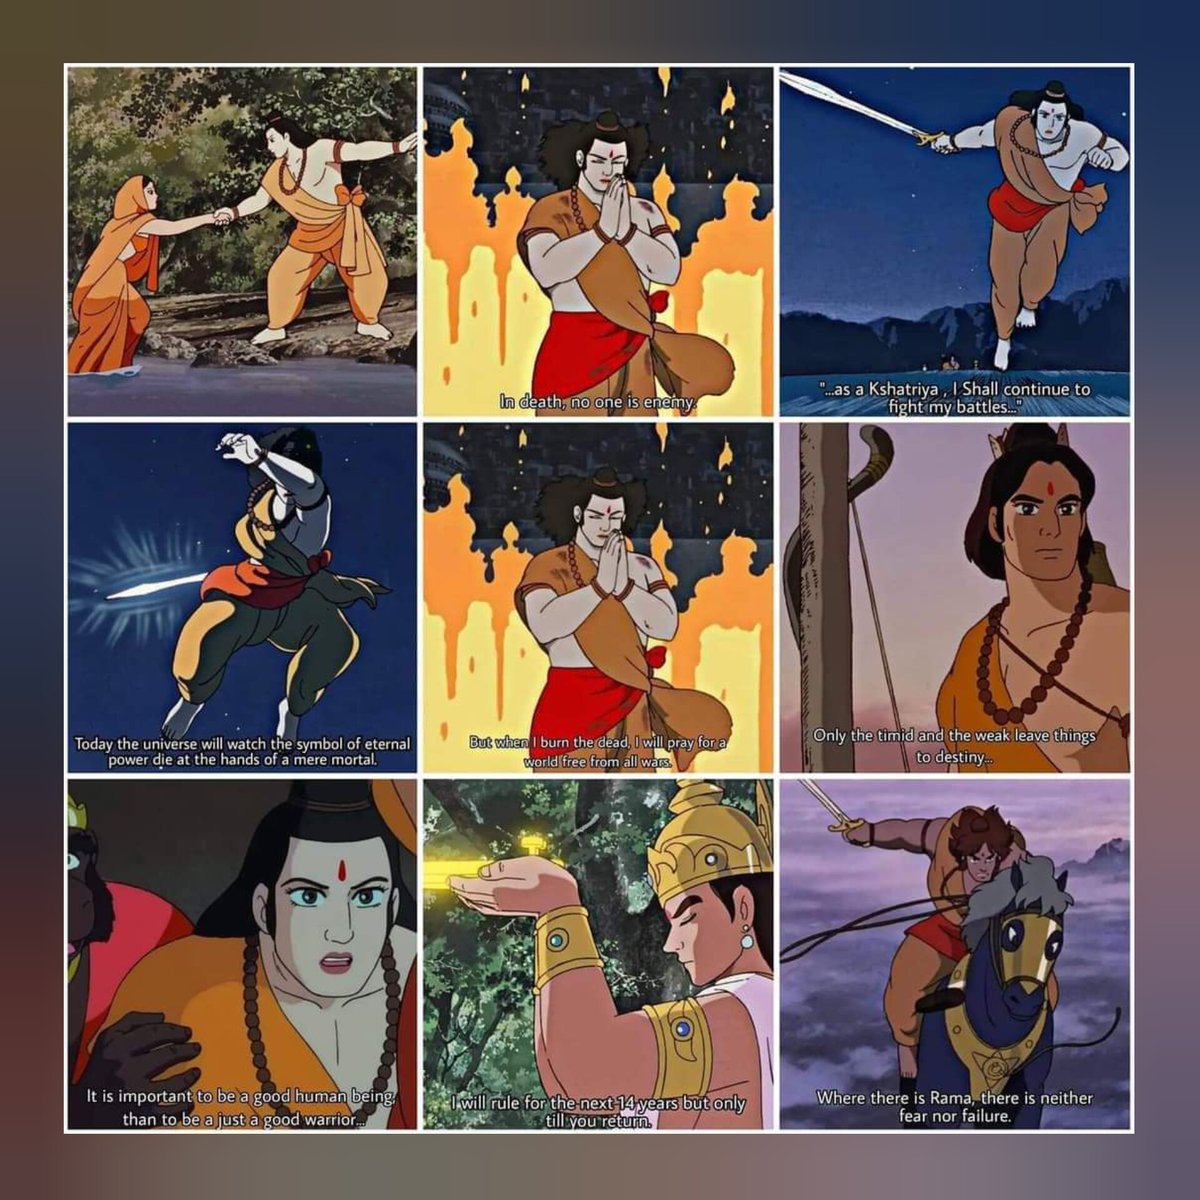 Made in Japan in 1992 yet 100x better than Adipurush.

Ramayana: The legend of Prince Rama ❤️

#AdipurushDisaster #आदिपुरुष 
#BlockbusterAdipurush 
#AdipurushEarthShatteringDay1
#OperationGanga